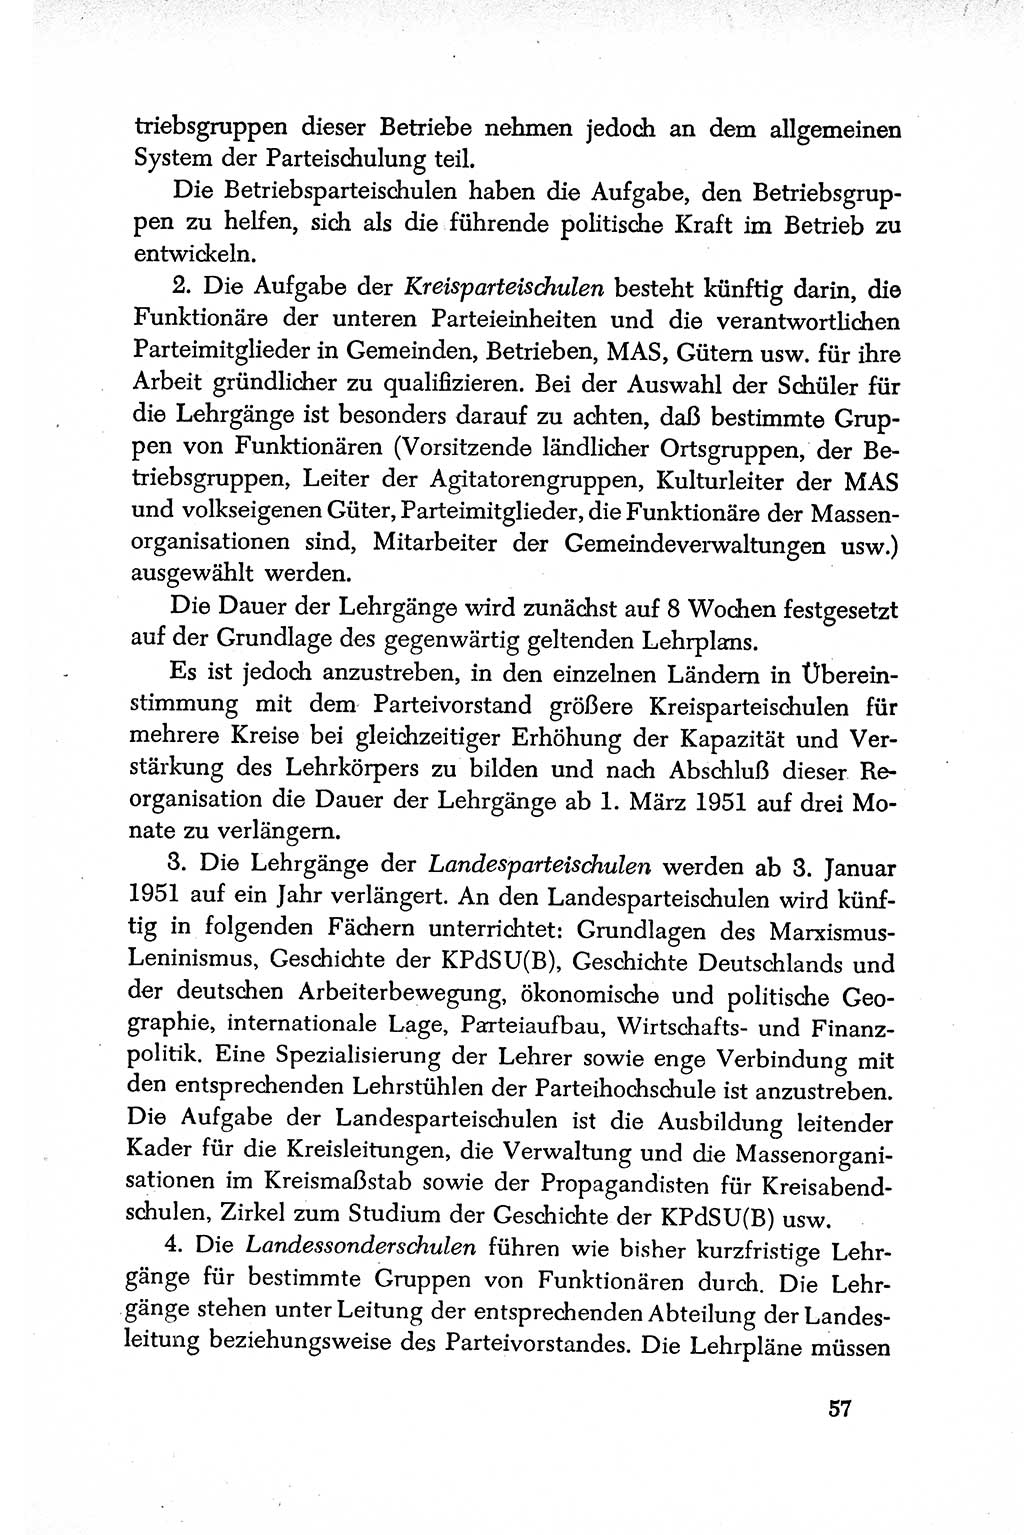 Dokumente der Sozialistischen Einheitspartei Deutschlands (SED) [Deutsche Demokratische Republik (DDR)] 1950-1952, Seite 57 (Dok. SED DDR 1950-1952, S. 57)